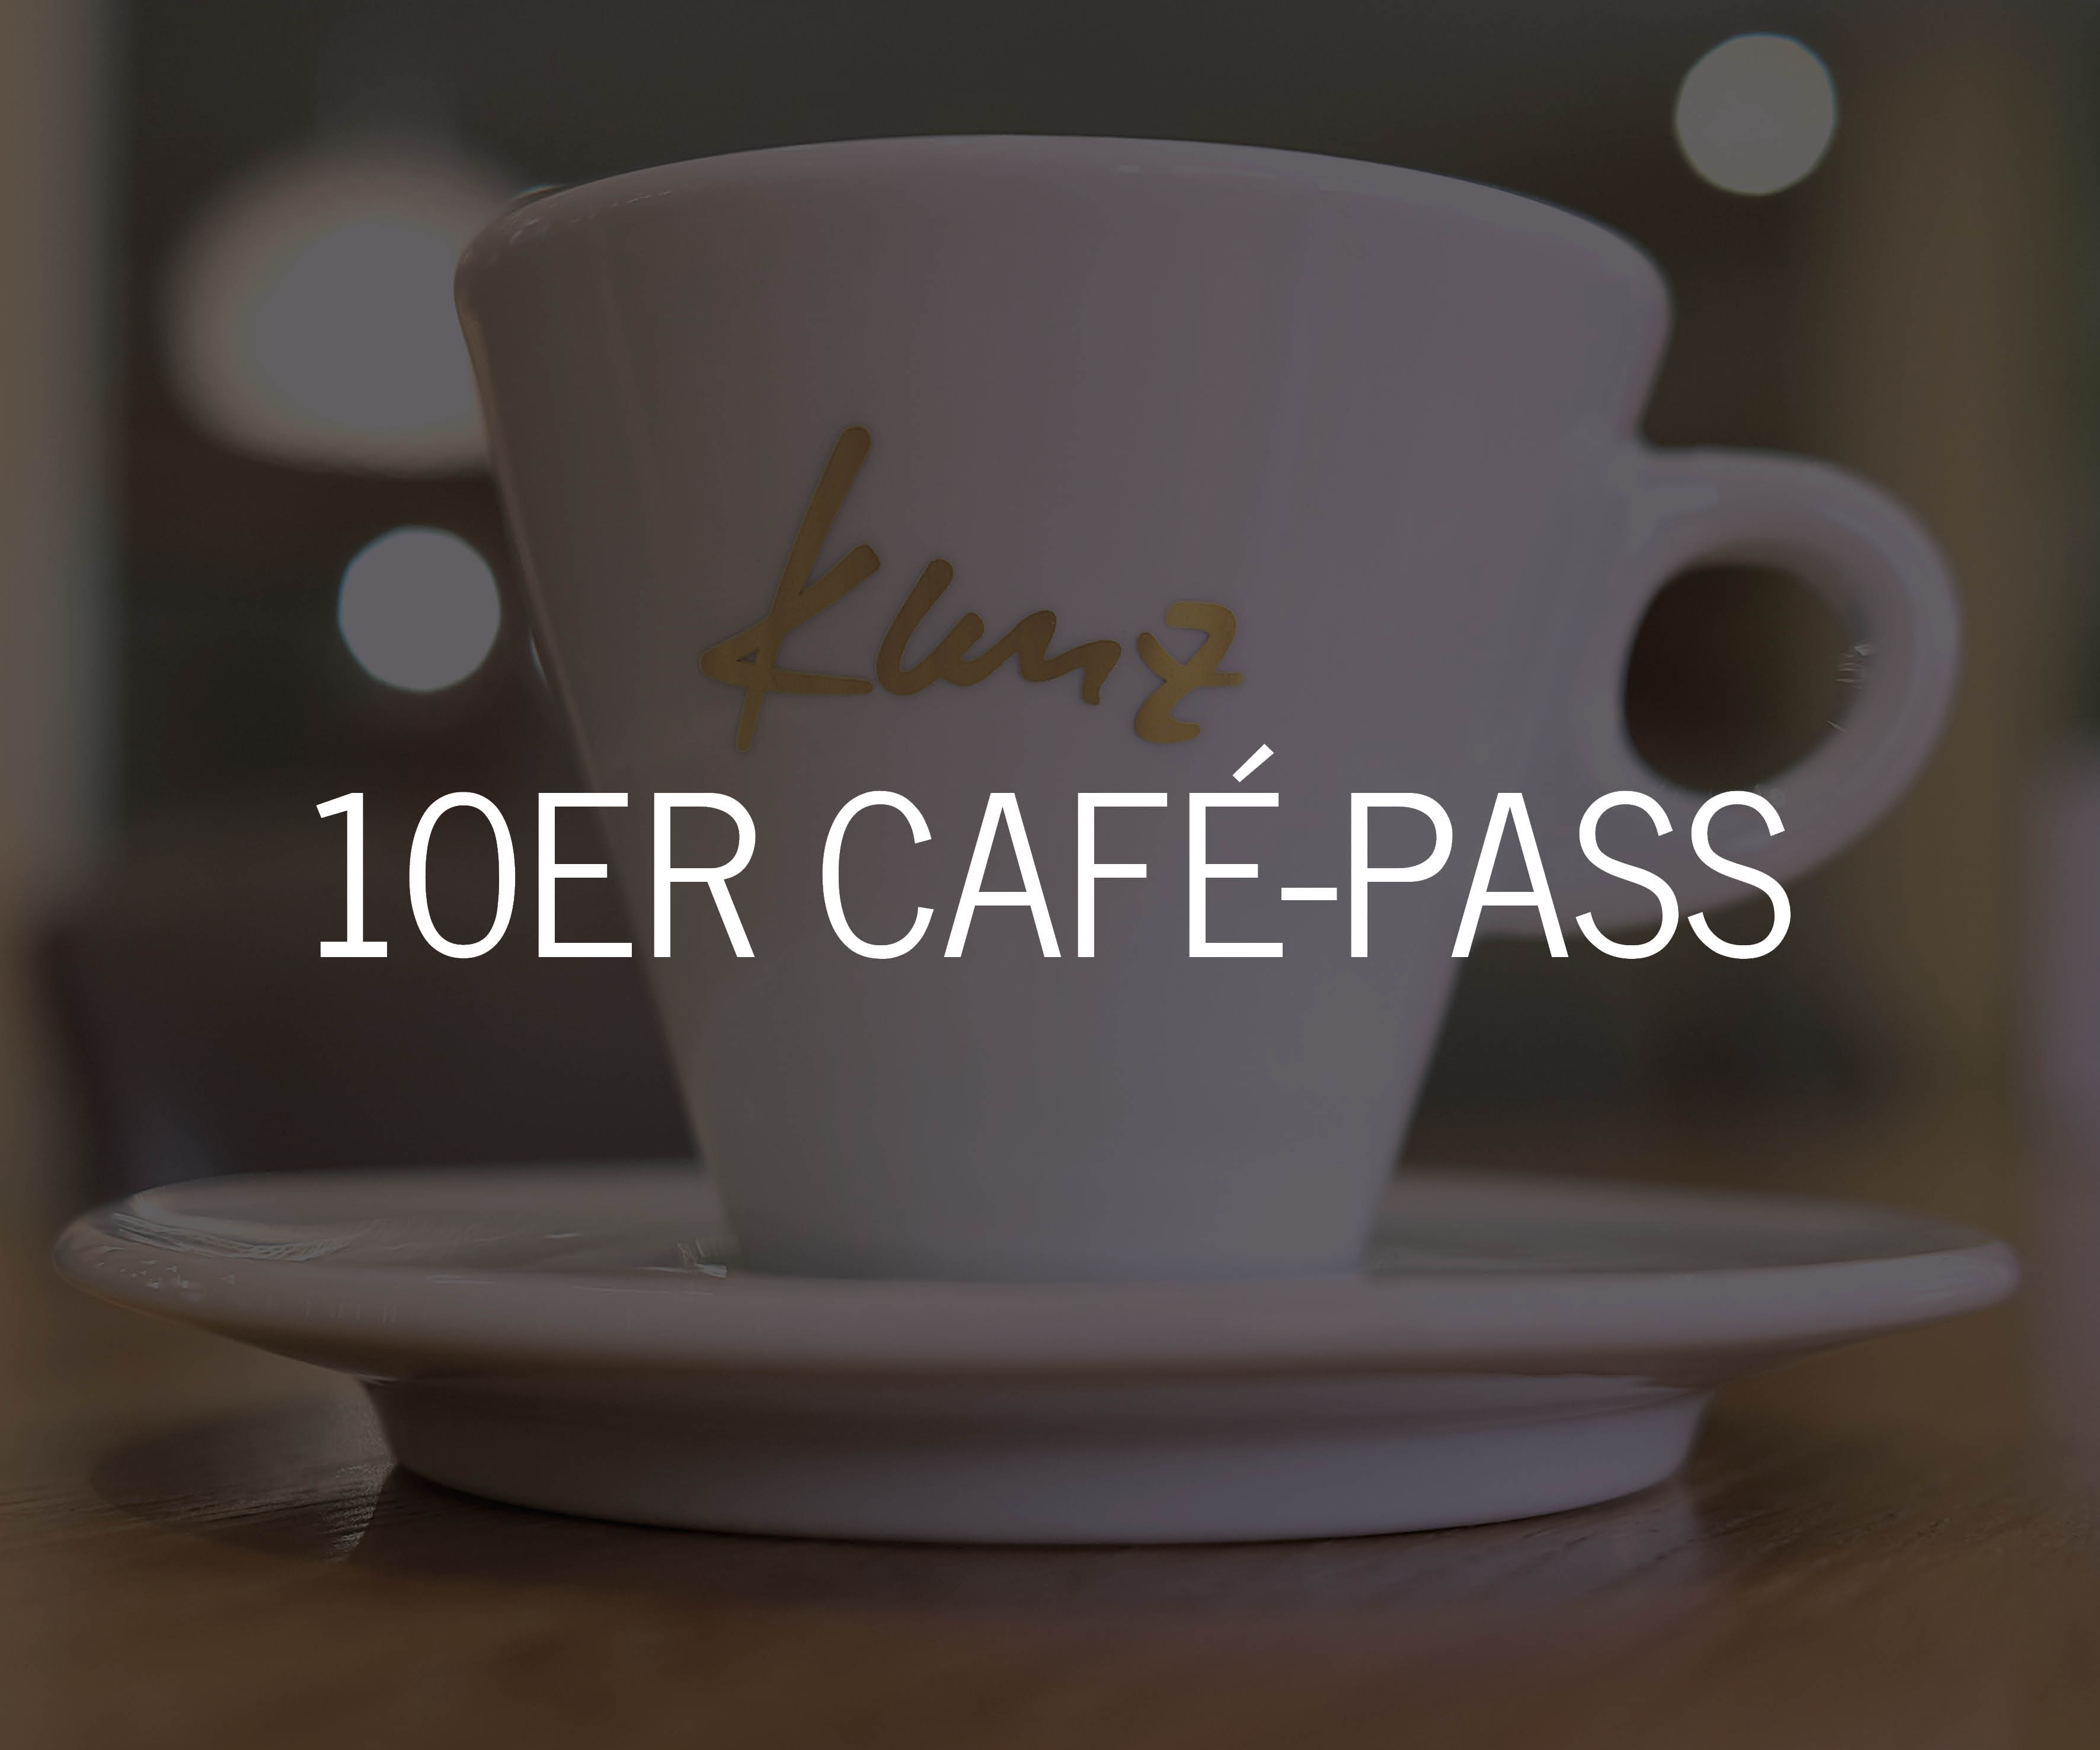 10er Café-Pass